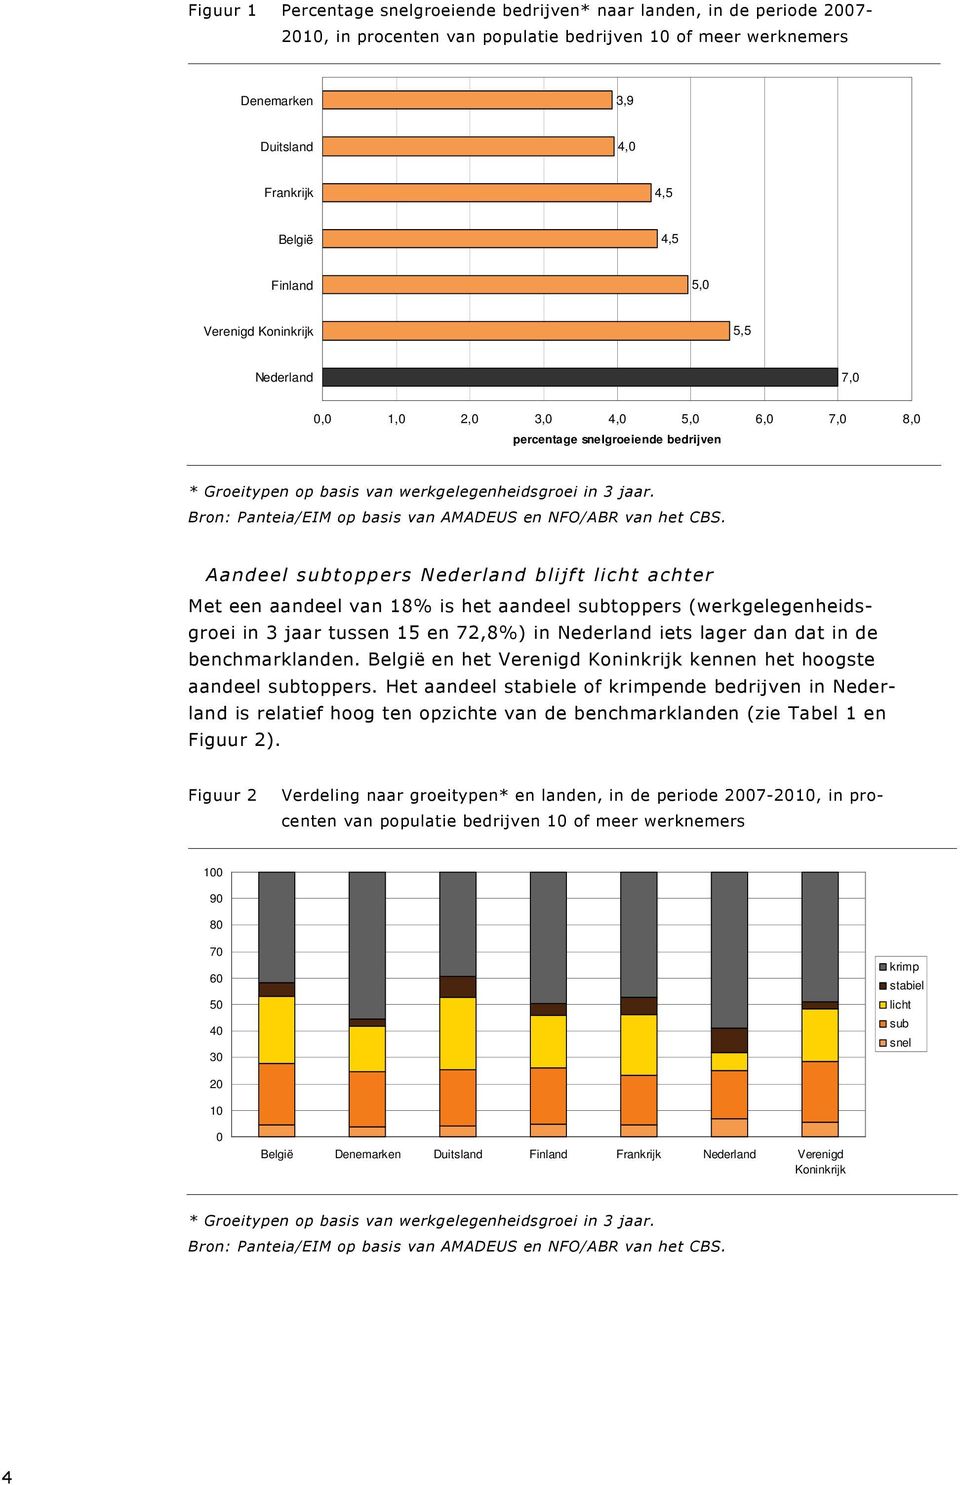 aandeel subtoppers (werkgelegenheidsgroei in 3 jaar tussen 15 en 72,8%) in Nederland iets lager dan dat in de benchmarklanden. België en het Verenigd Koninkrijk kennen het hoogste aandeel subtoppers.